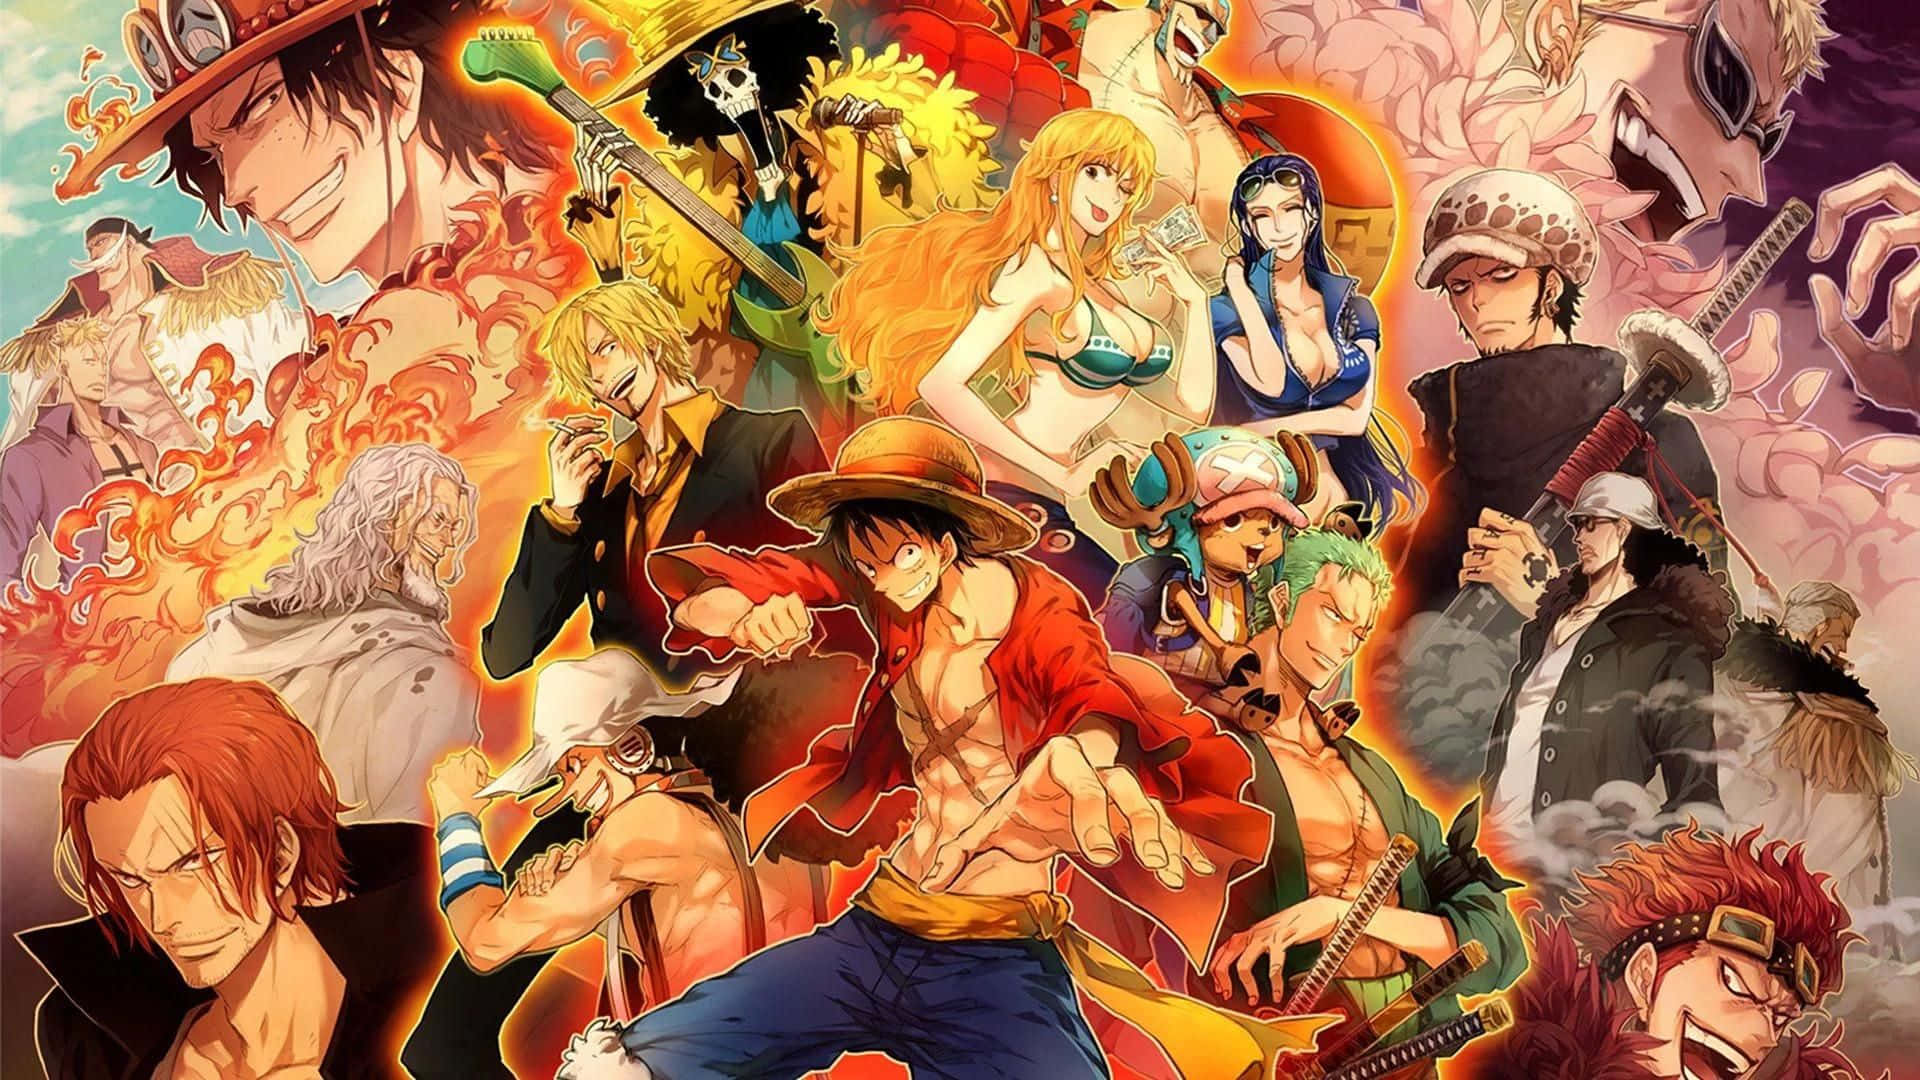 Với những ai yêu thích One Piece, hãy tận hưởng bức hình nền đầy ấn tượng với hình ảnh các nhân vật đầy sức mạnh từ series này. Hãy khám phá các chi tiết thú vị và sức hút của bức hình này để cảm nhận được tinh thần đích thực của One Piece.